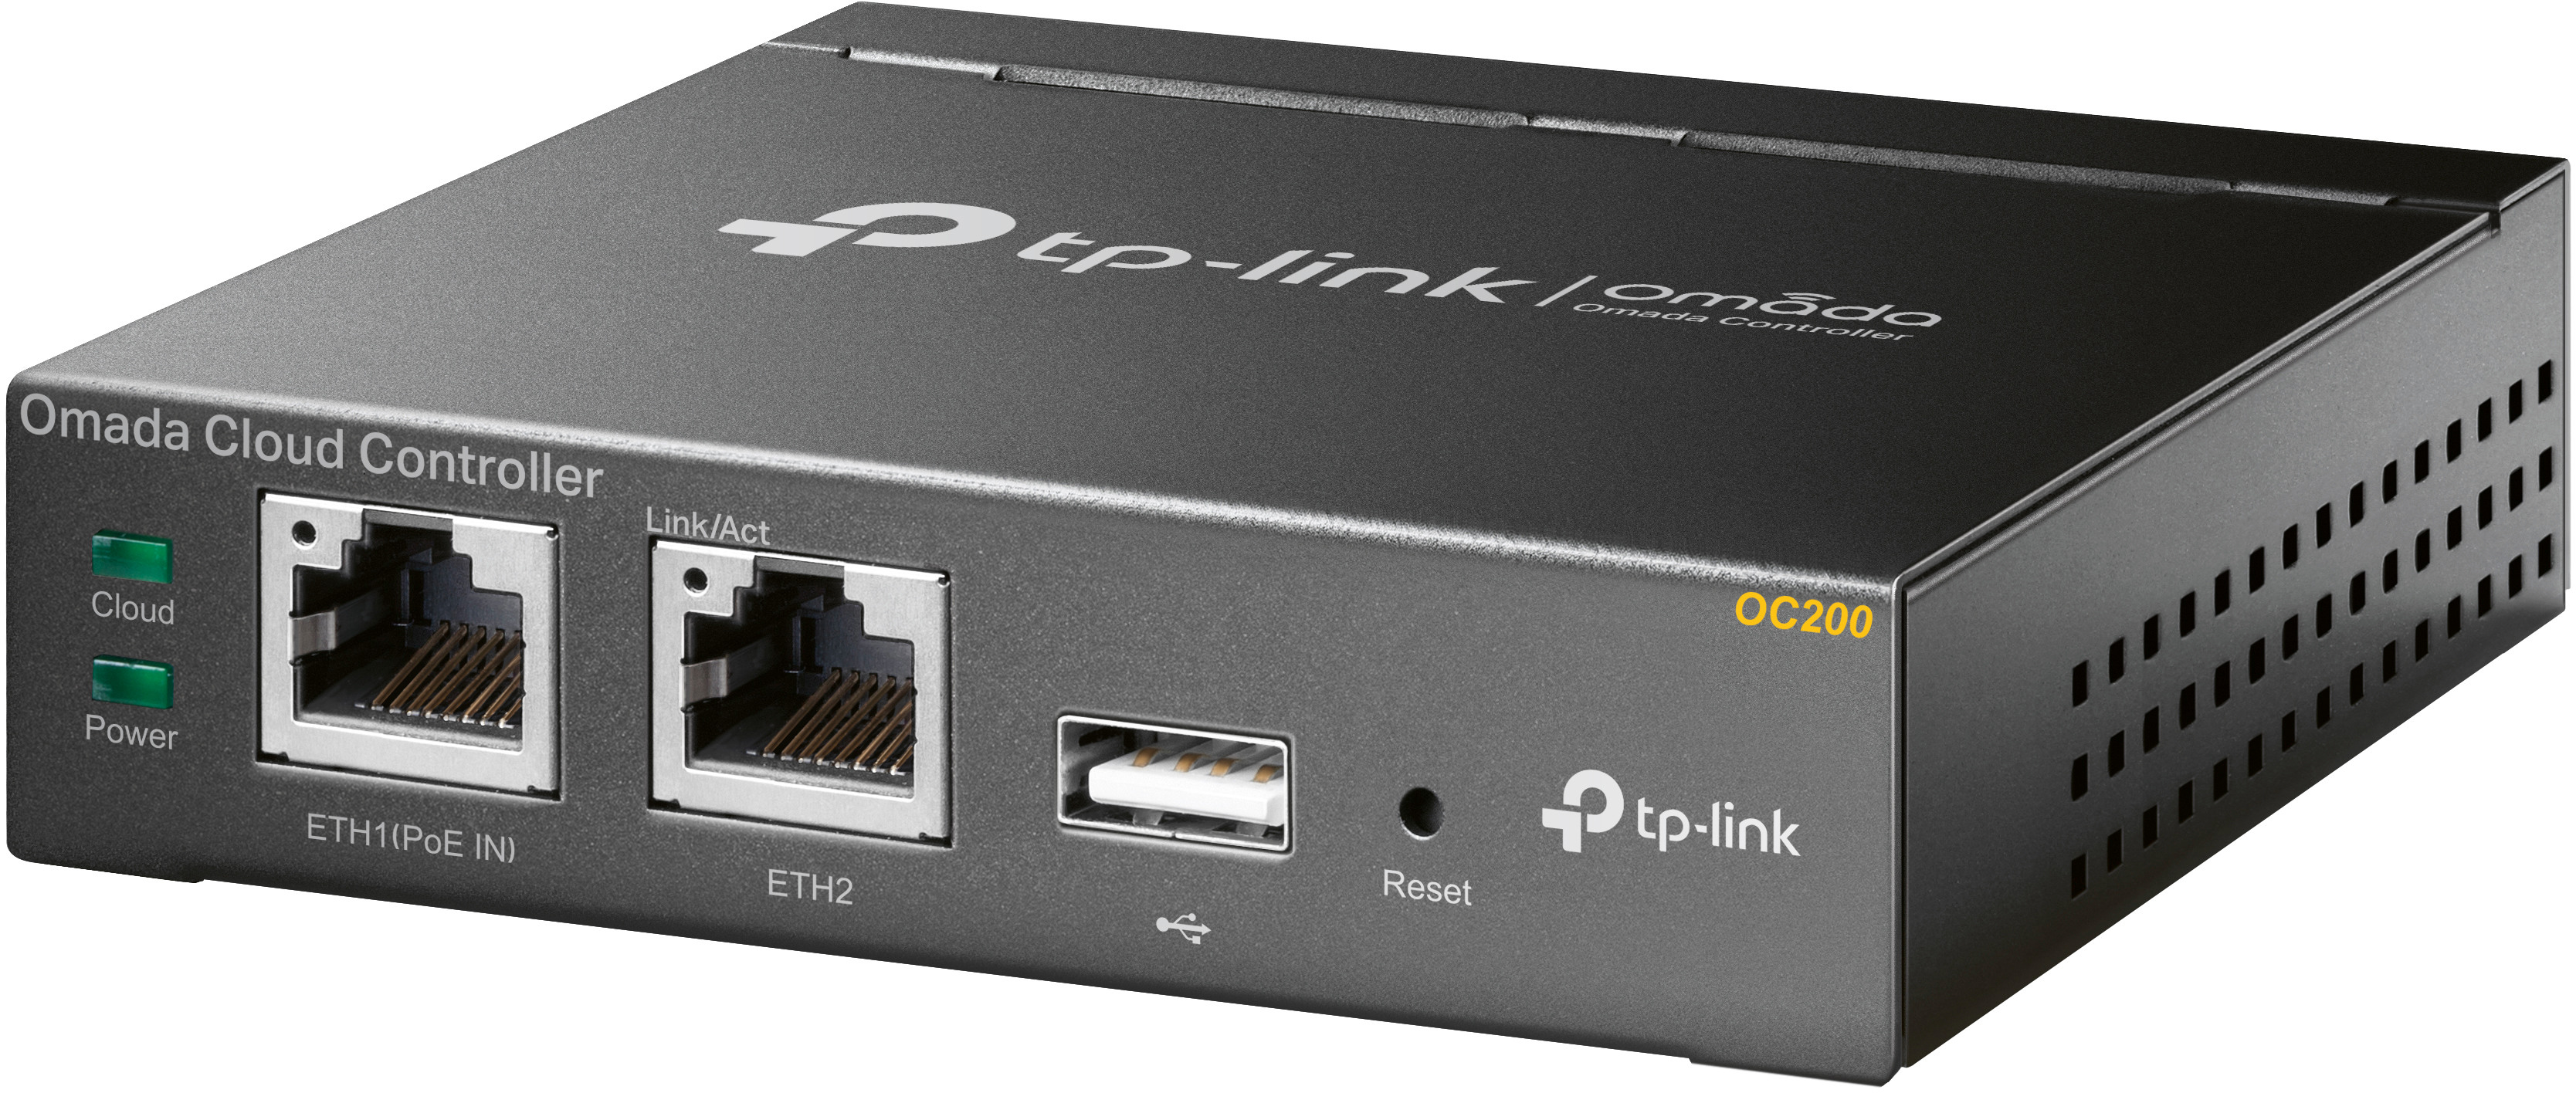 TP-LINK Omada Cloud Controller OC200